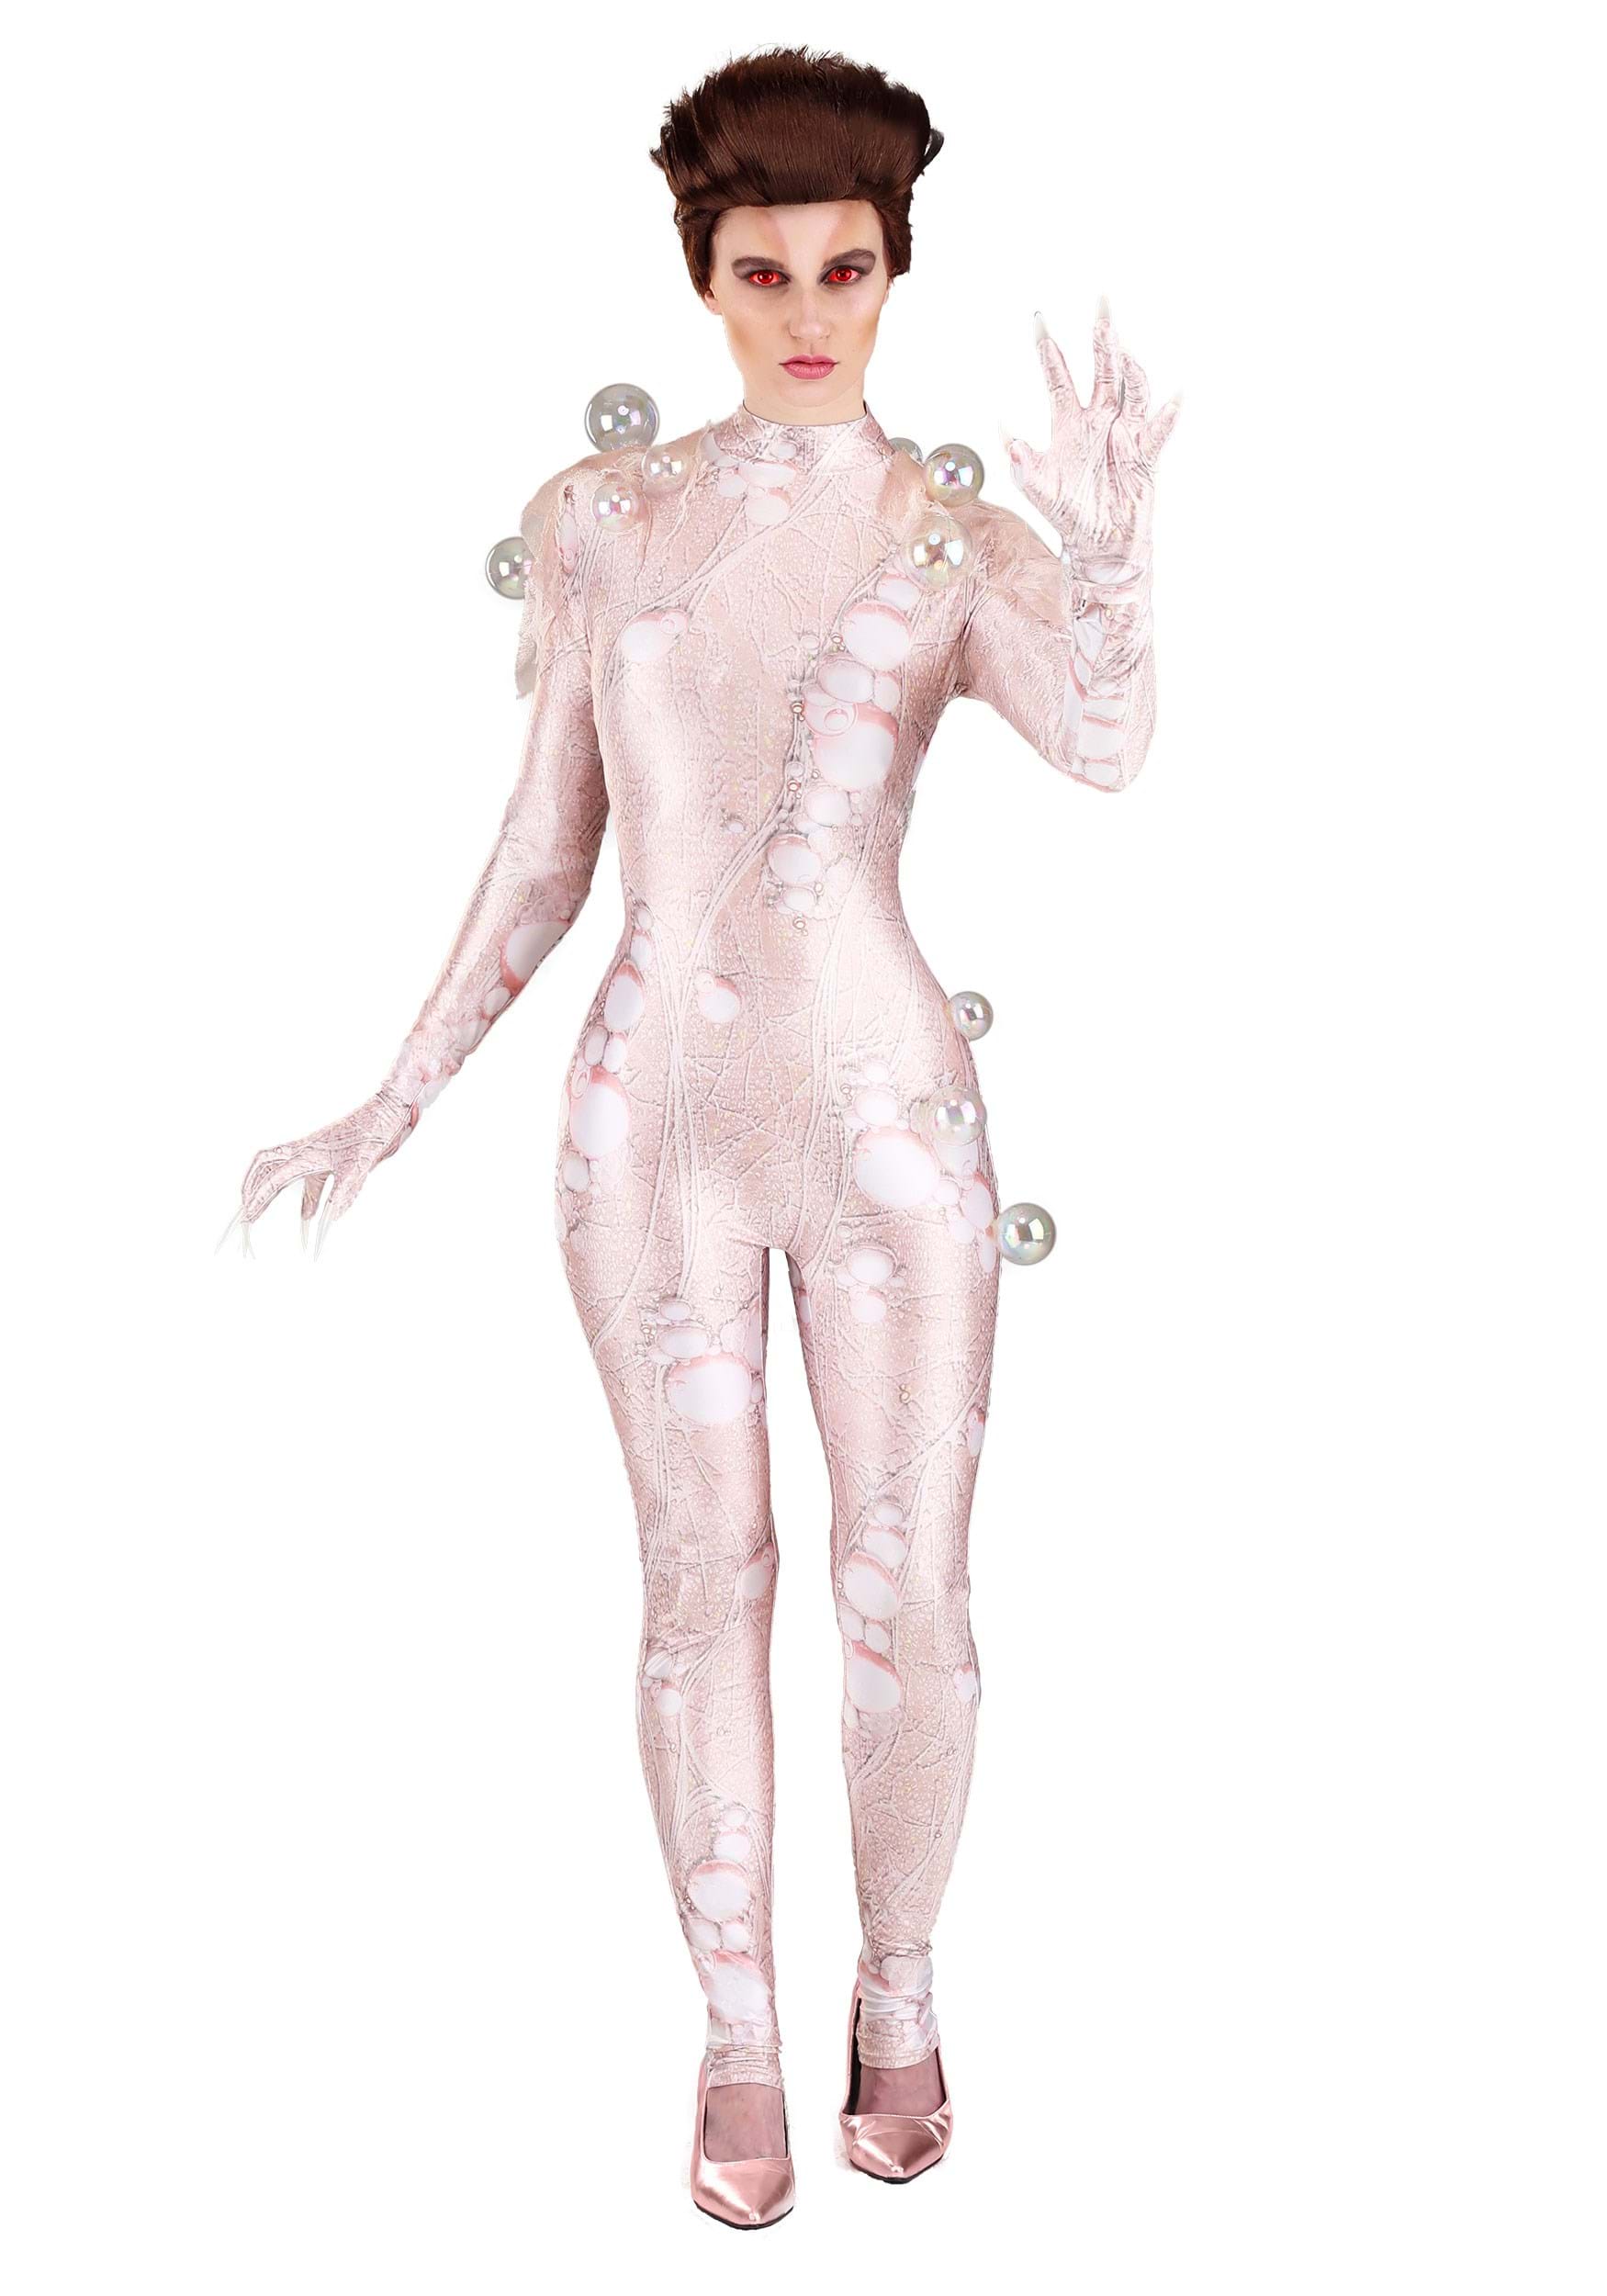 Ghostbusters Gozer Fancy Dress Costume For Women